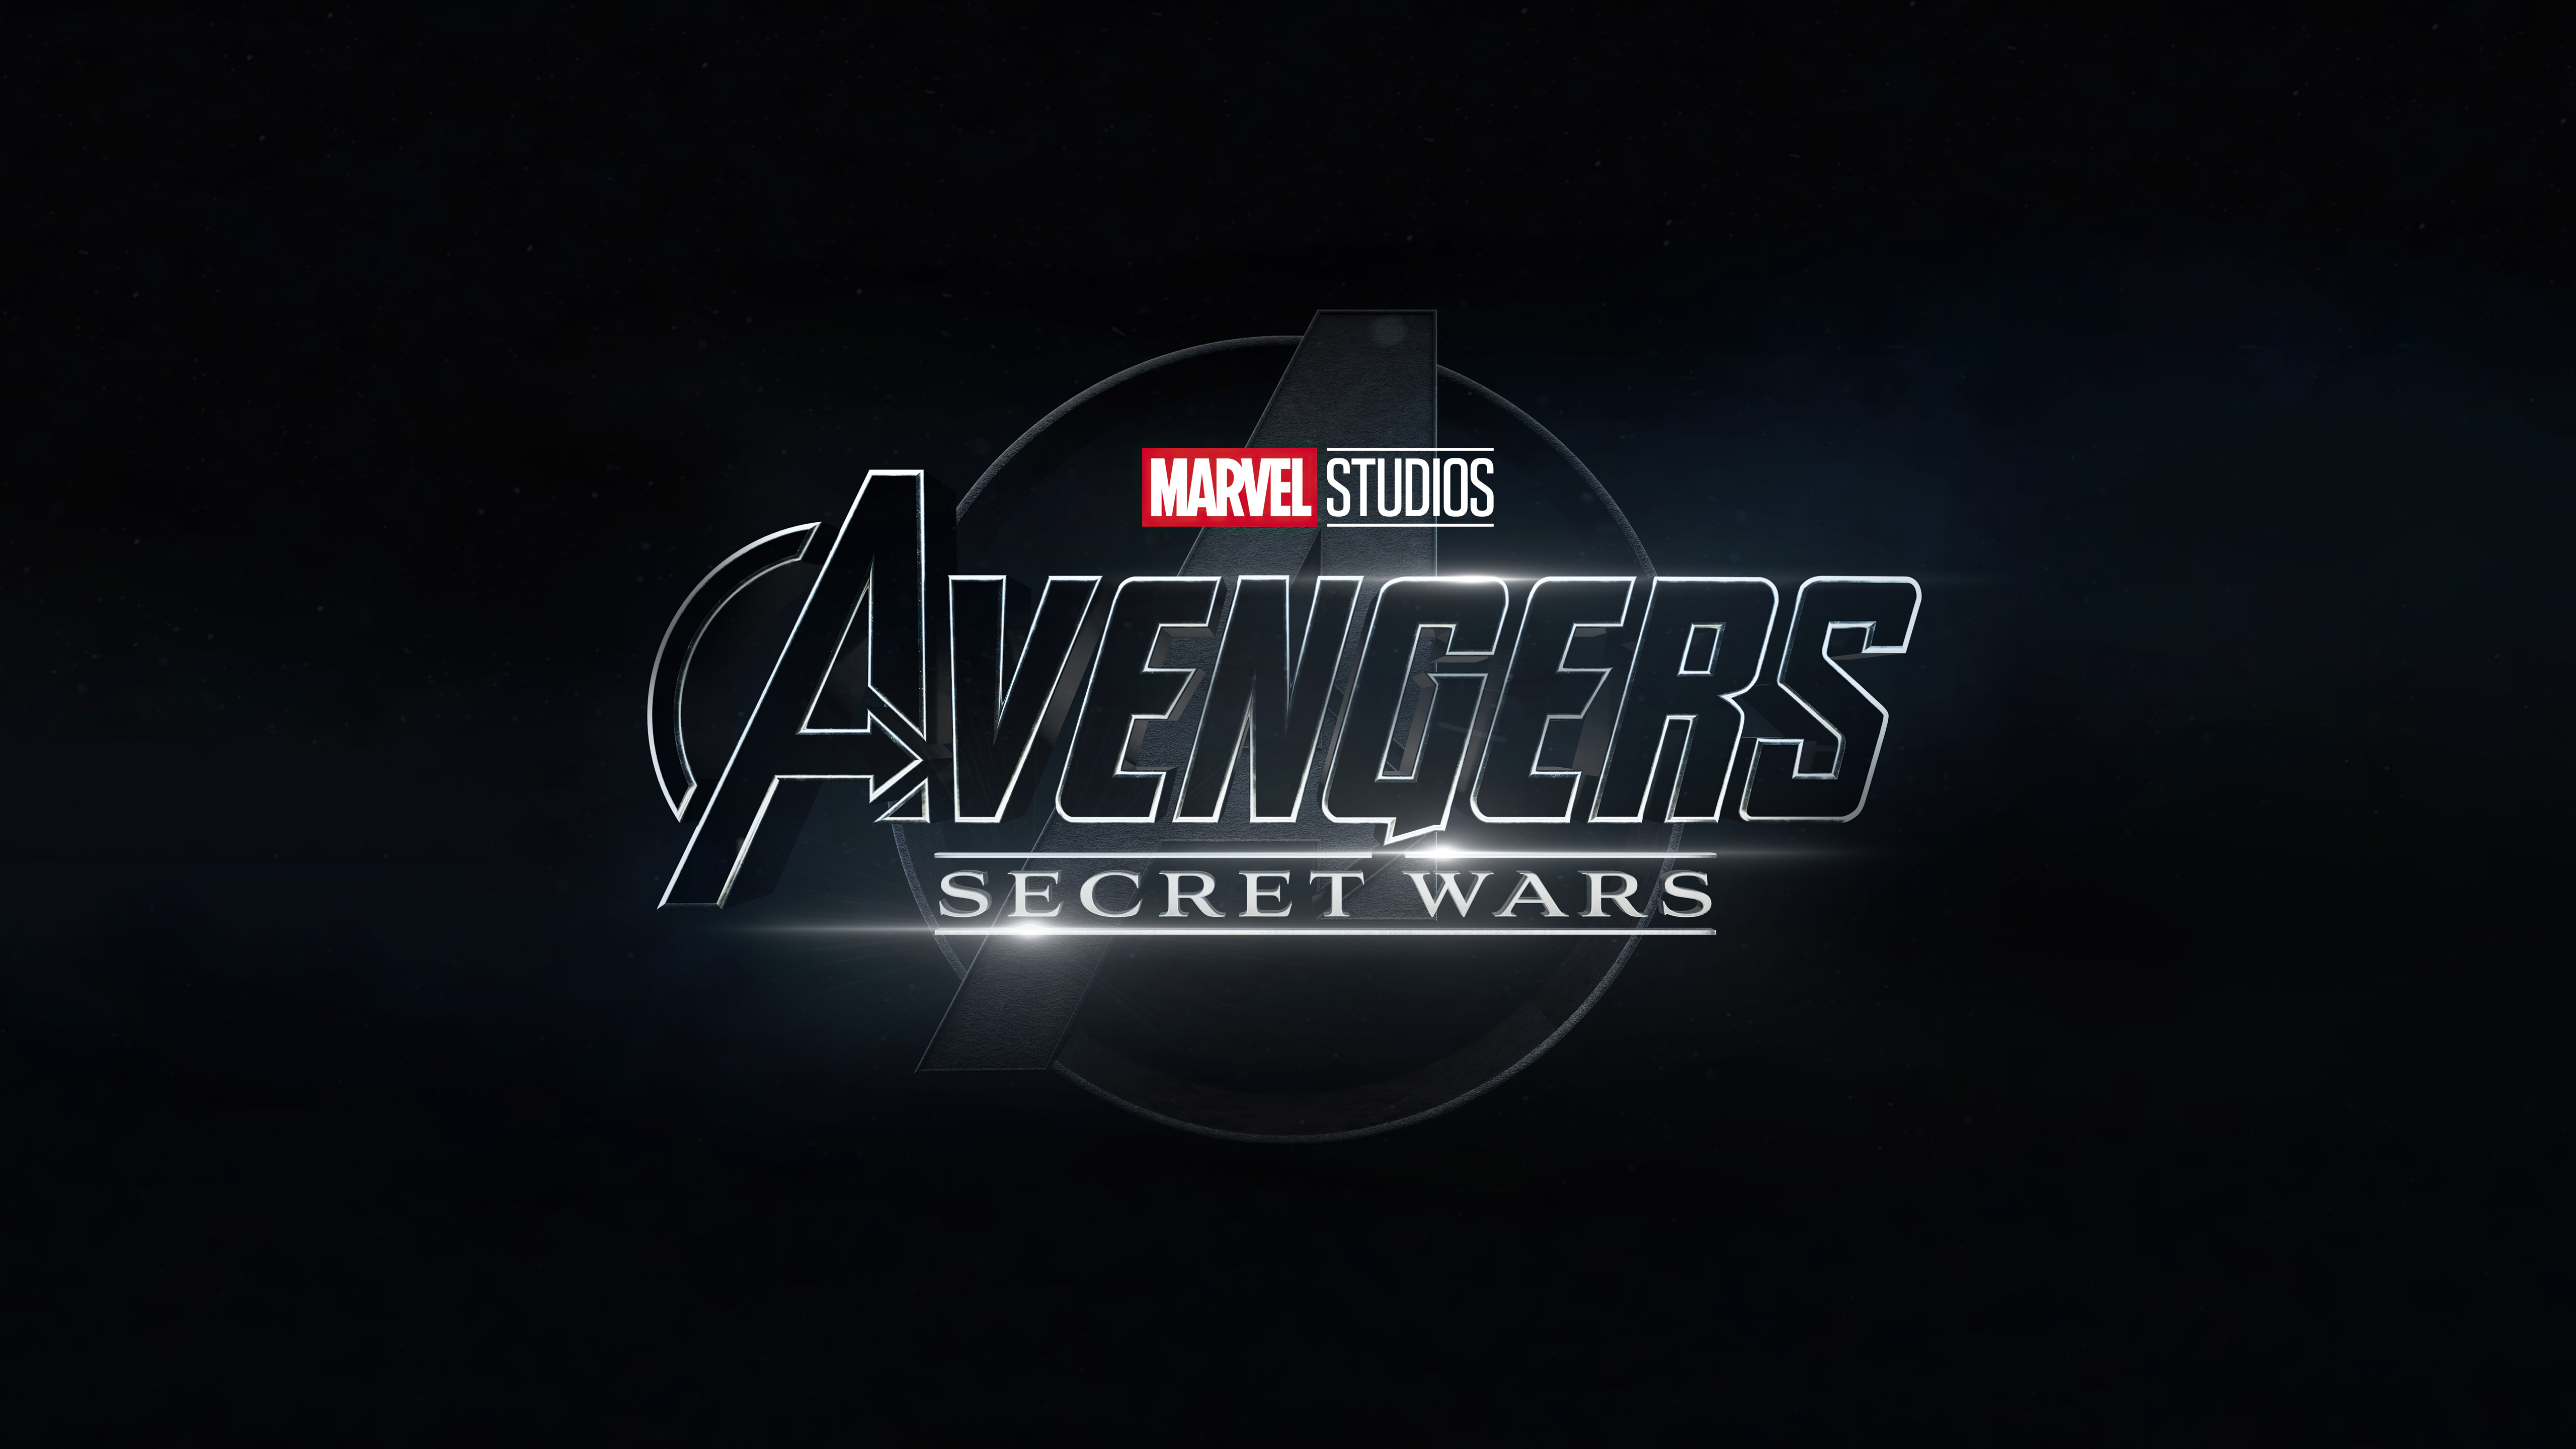 Avengers Secret Wars | It's Review Time